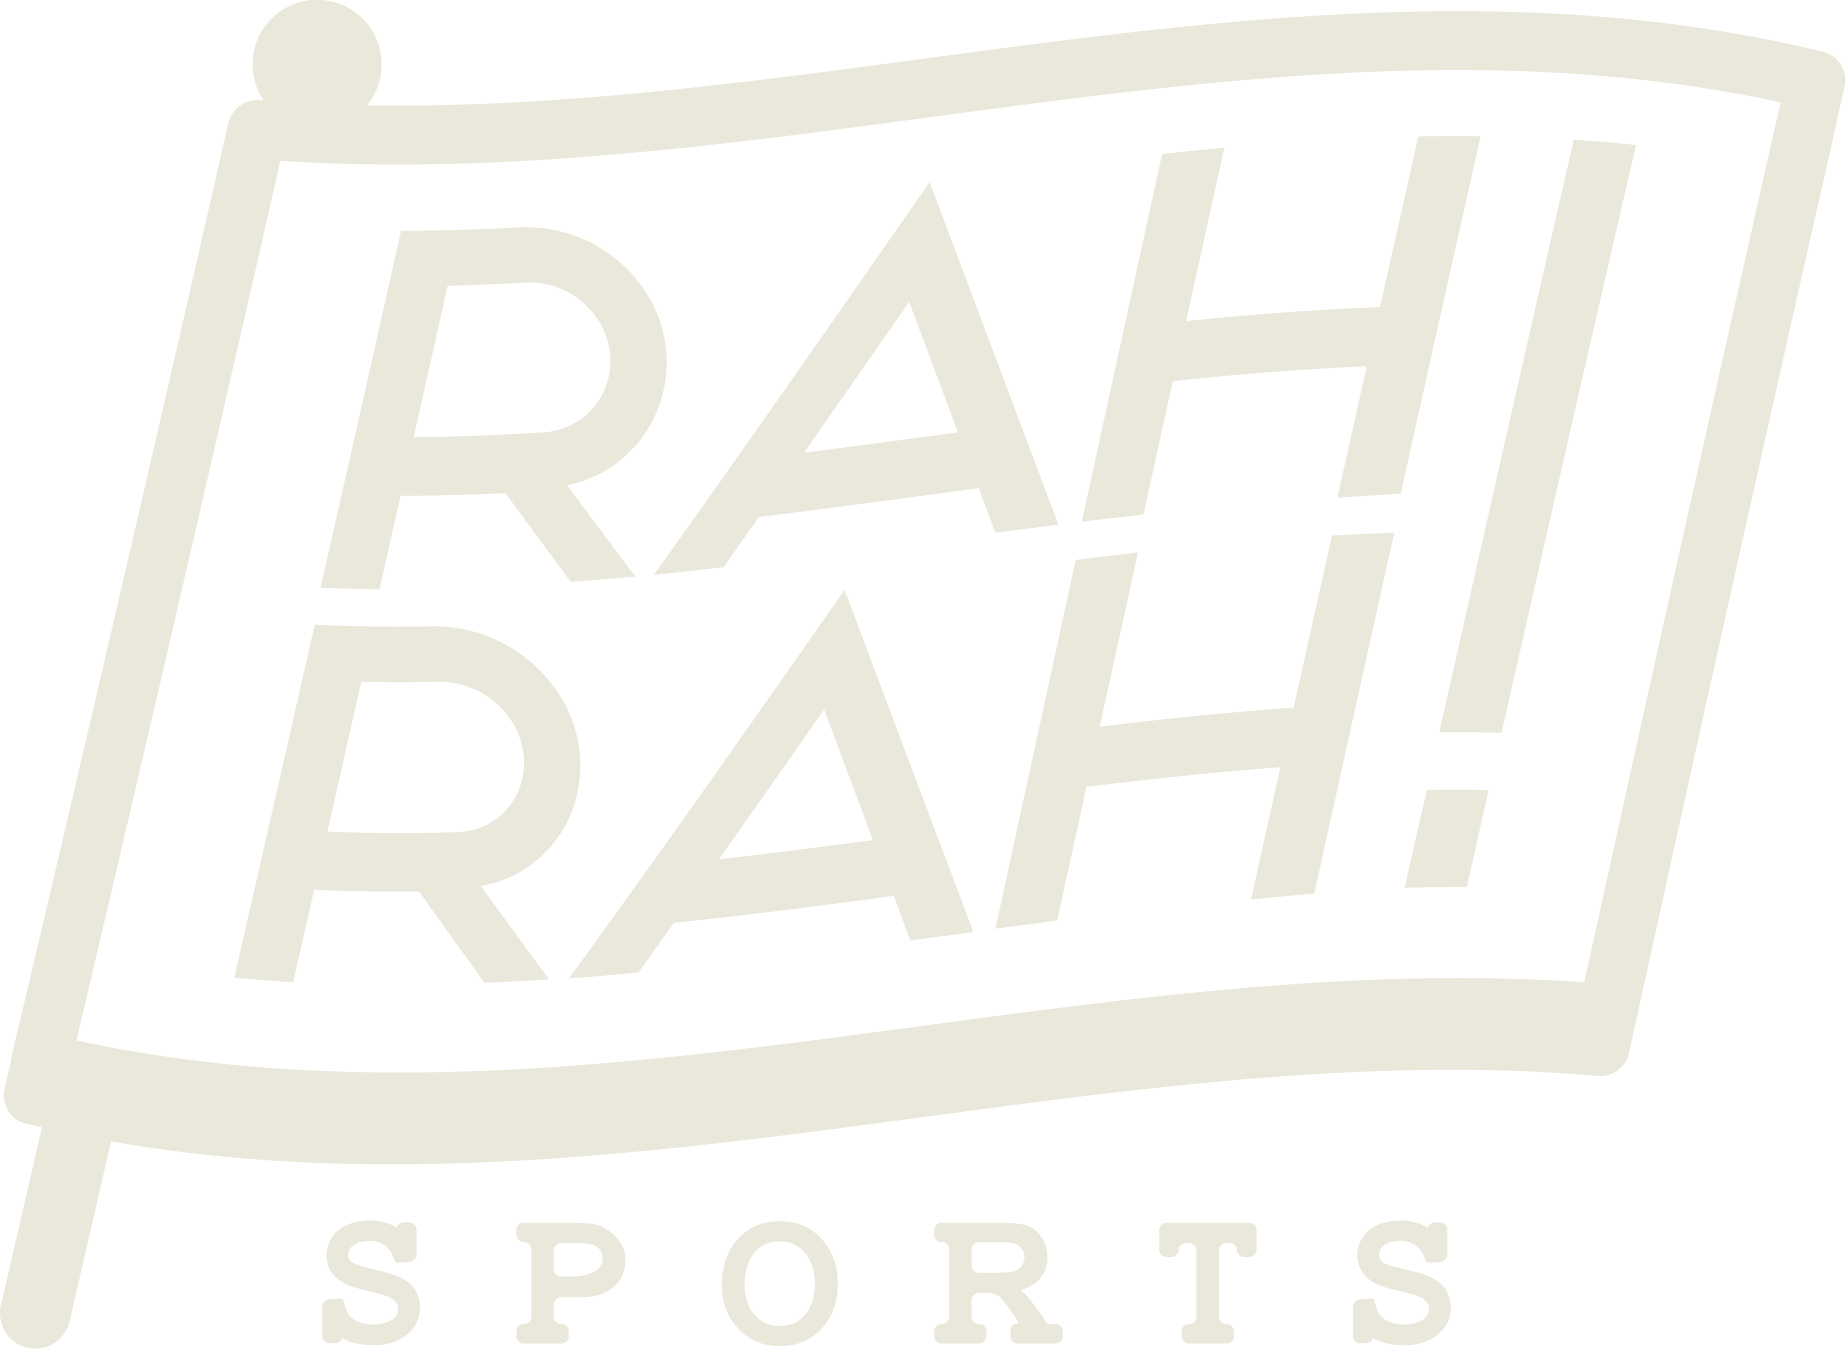 RahRahSports